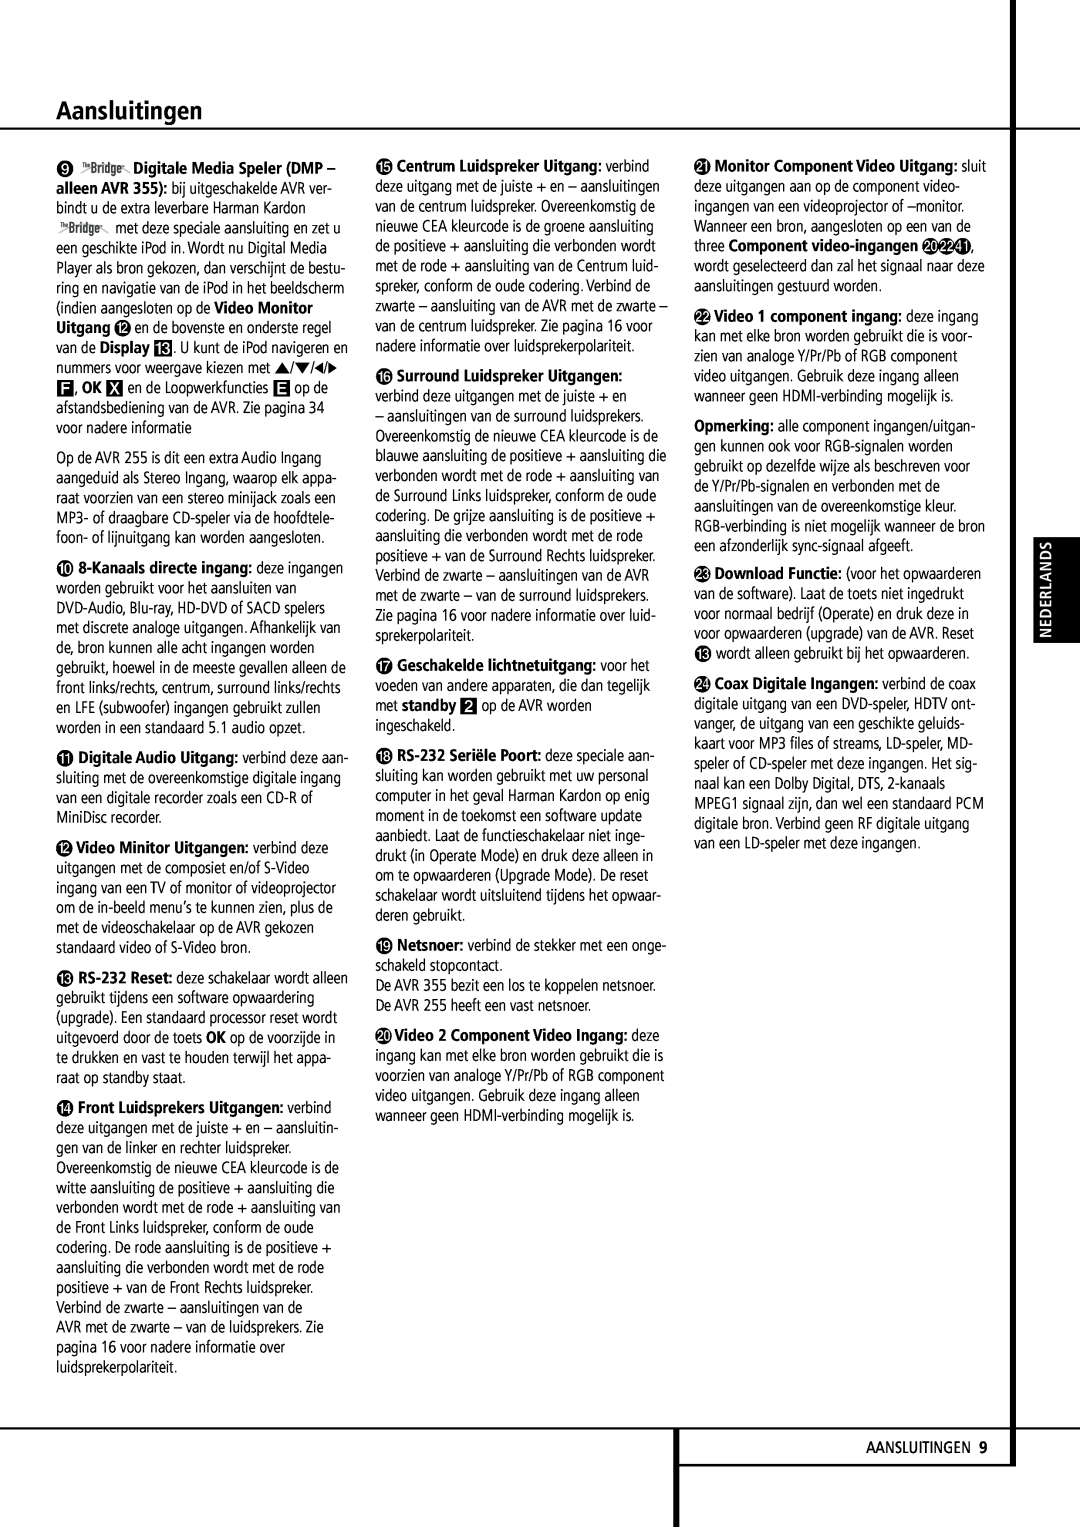 Harman-Kardon 355, 255 manual Aansluitingen, wordt alleen gebruikt bij het opwaarderen, Nederlands 